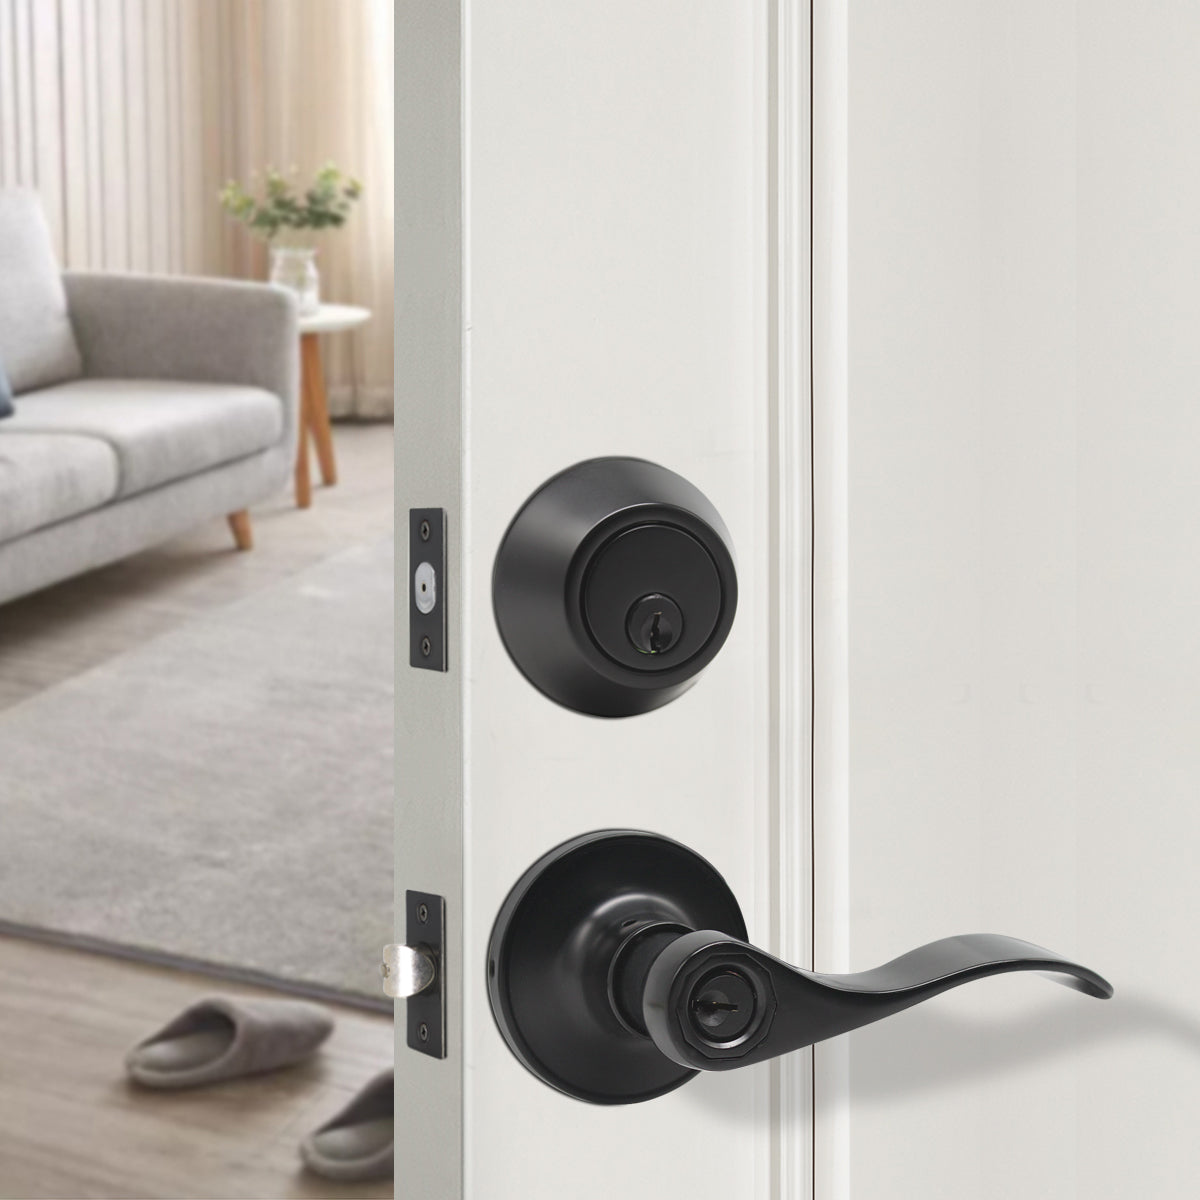 Wave Style Door Lever Lock with Single Cylinder Deadbolt Combo Packs Black Finish - Keyed Alike DL12061ET-101BK